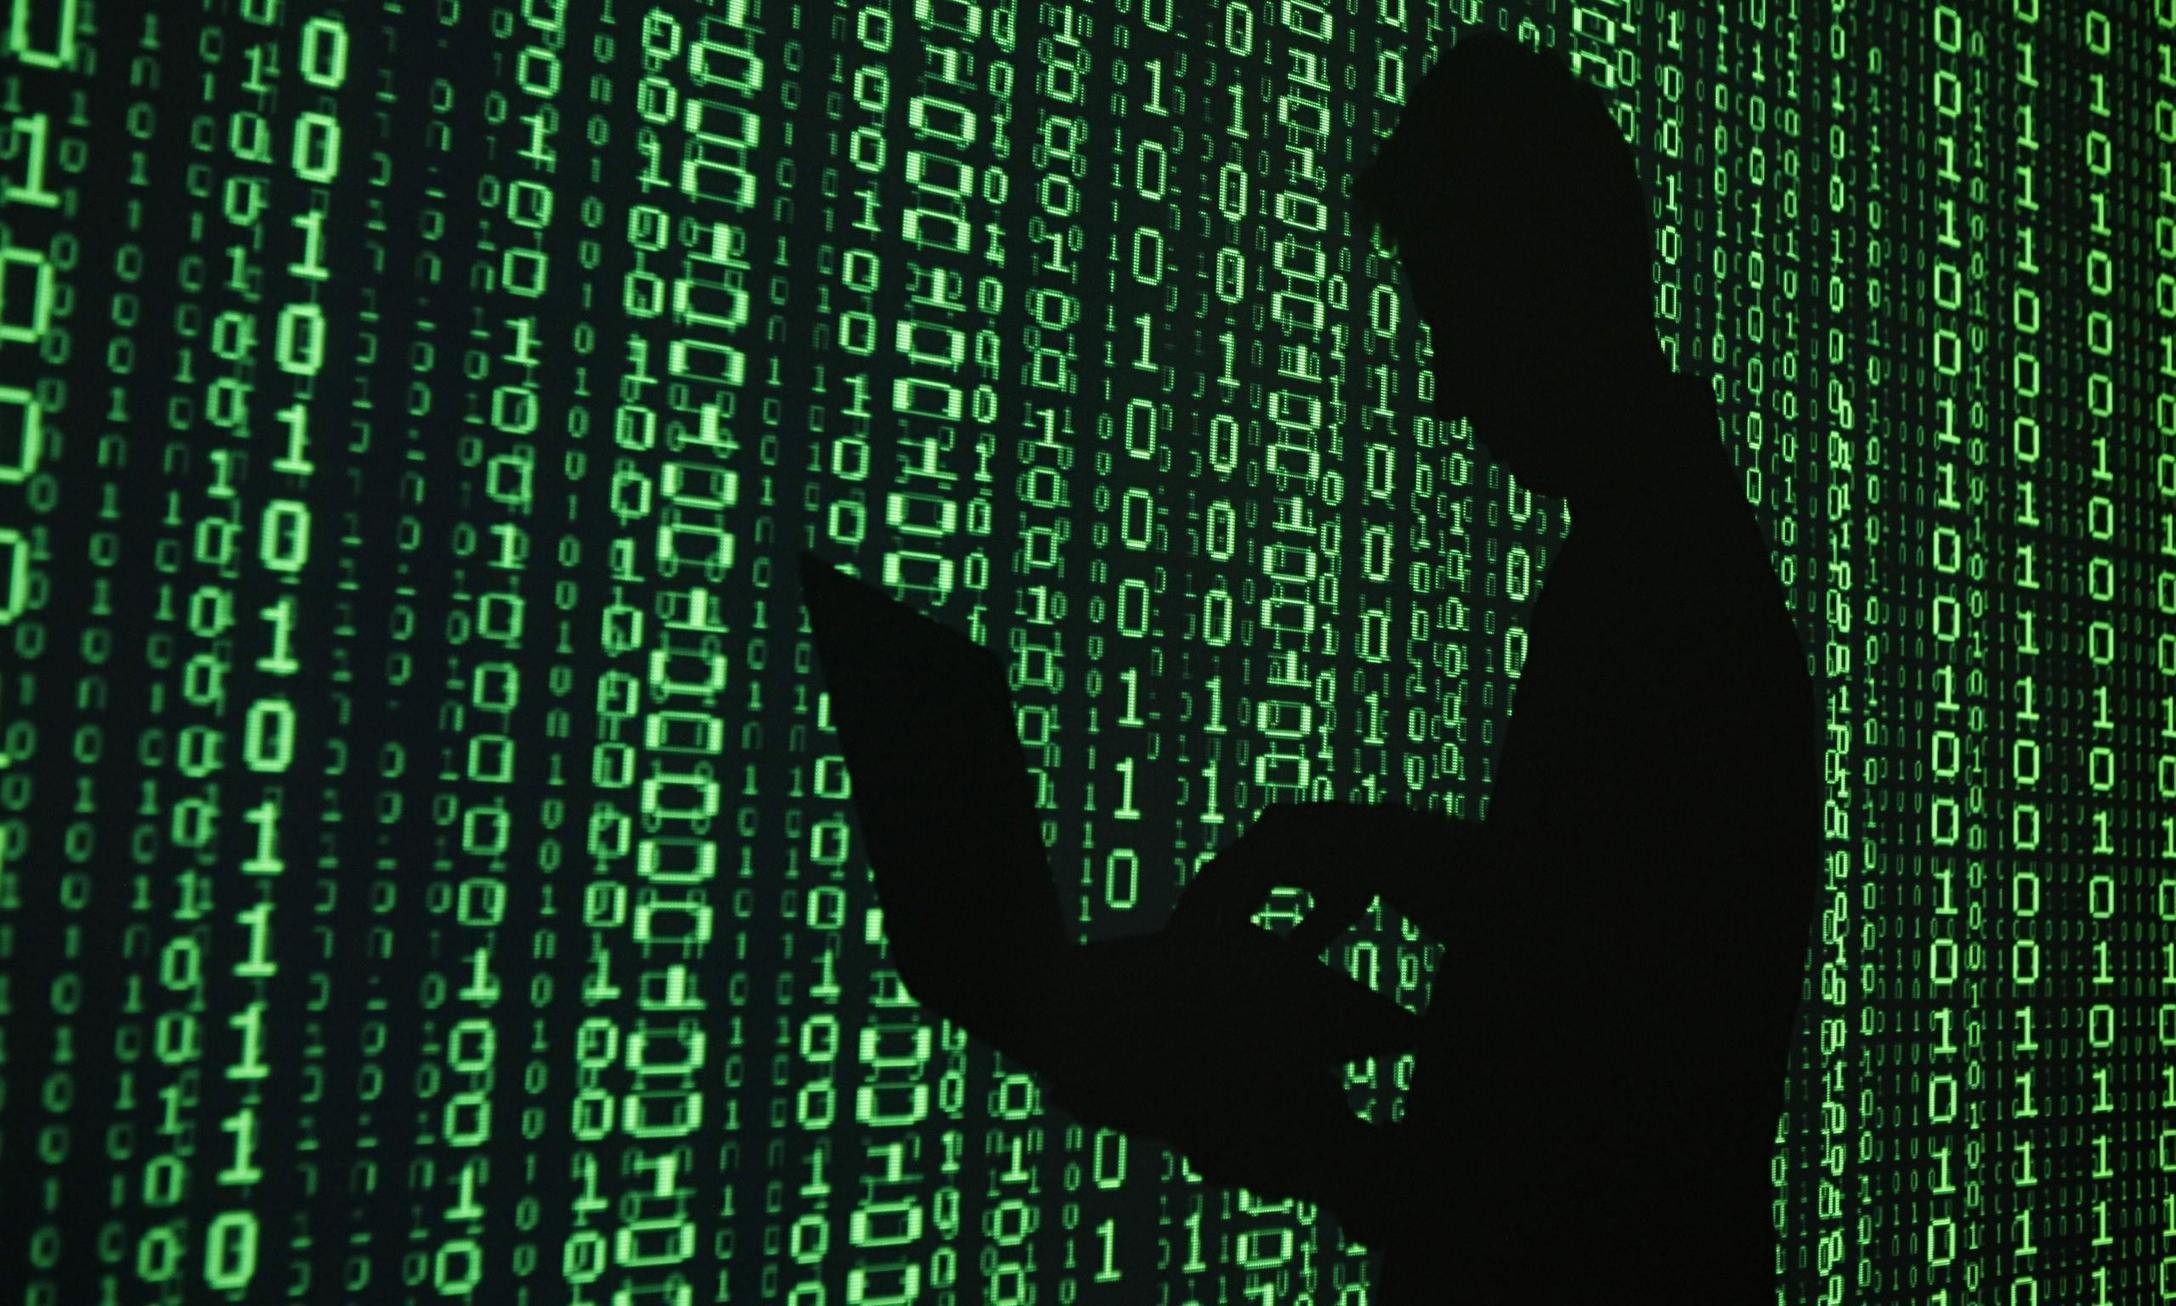 Госдума приняла закон о запрете анонимайзеров